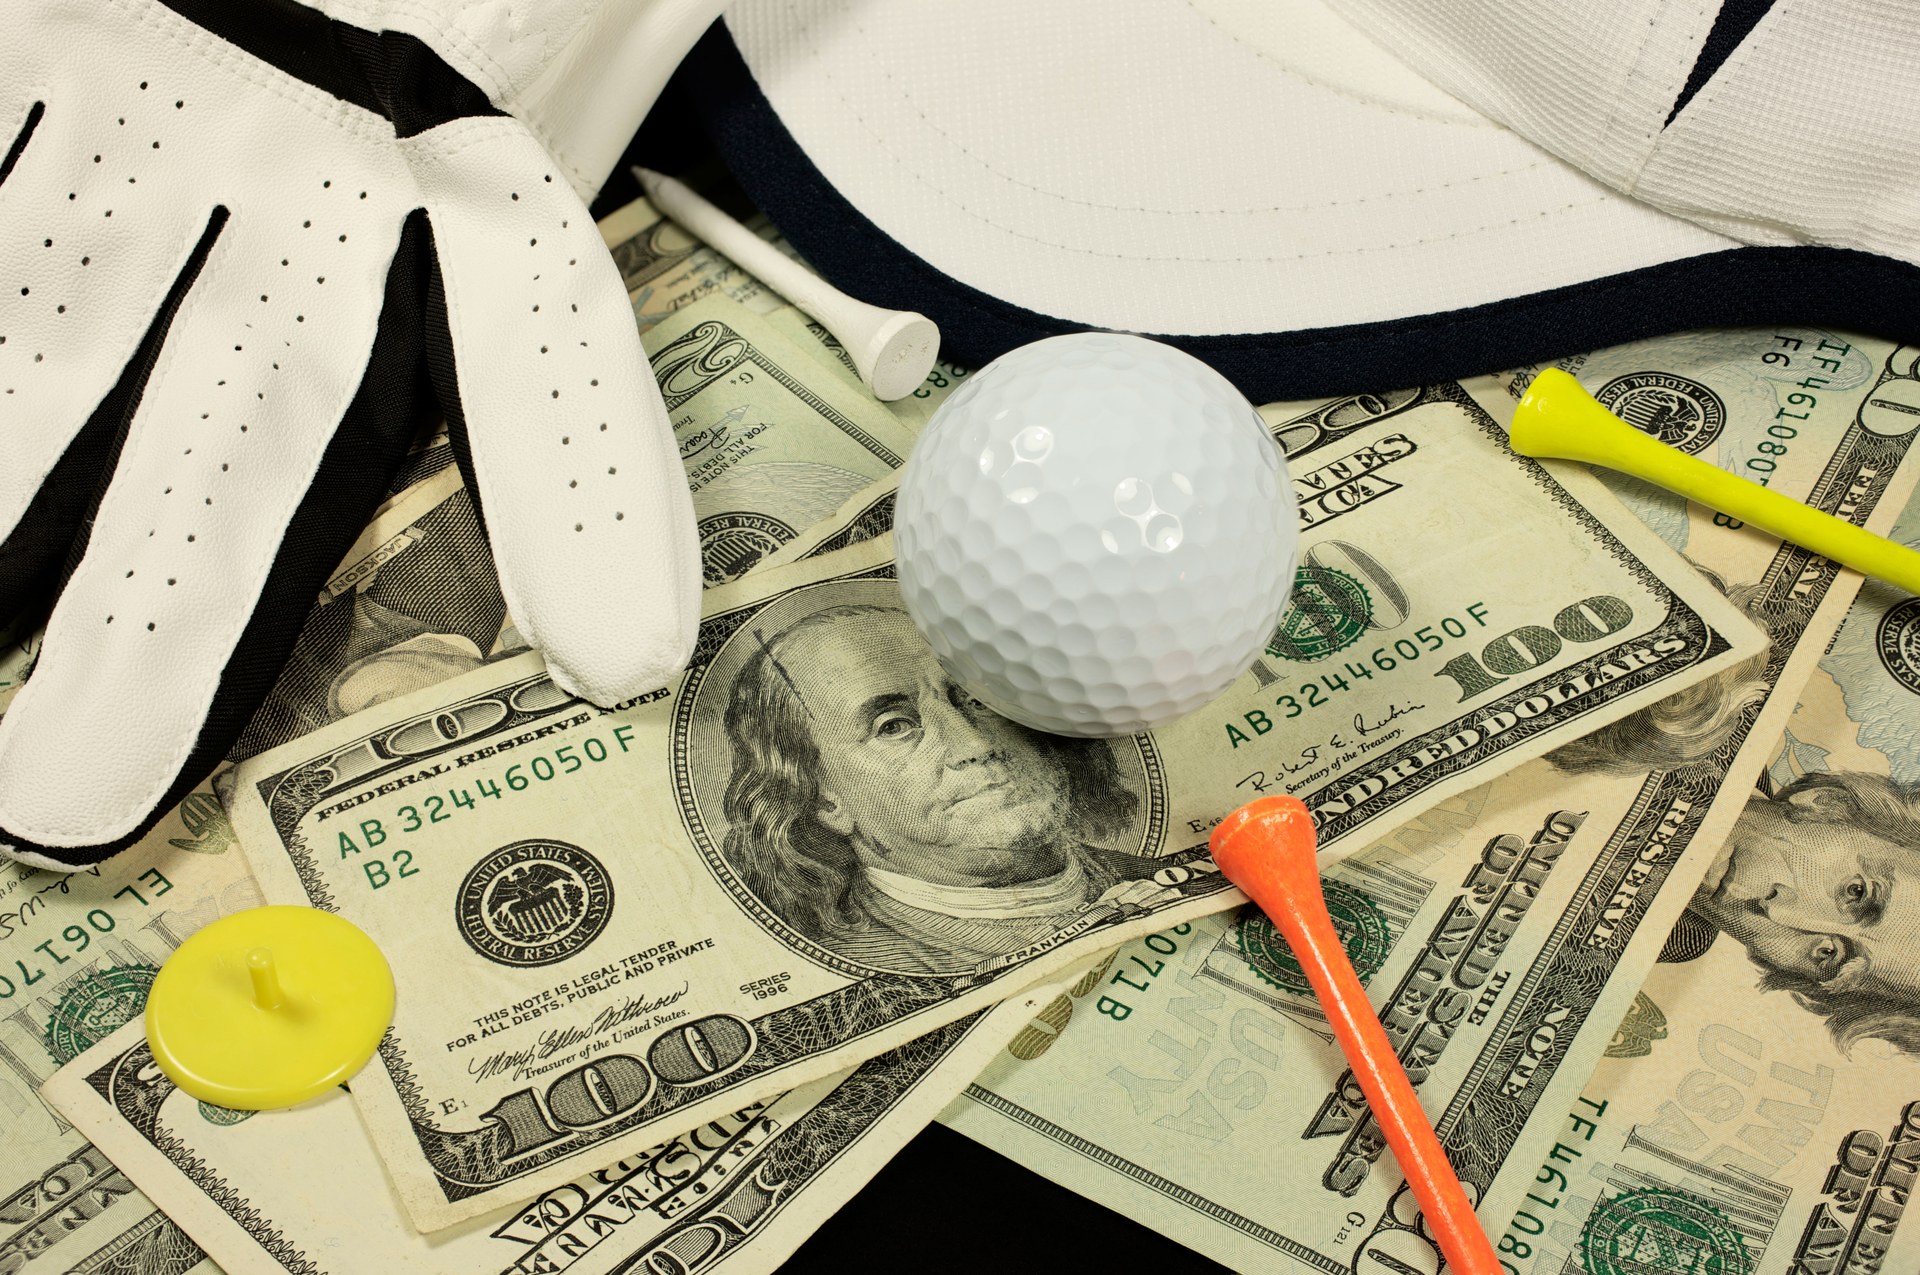 114 golfer chạm mốc 1 triệu USD tiền thưởng ở PGA Tour mùa này, họ là ai?